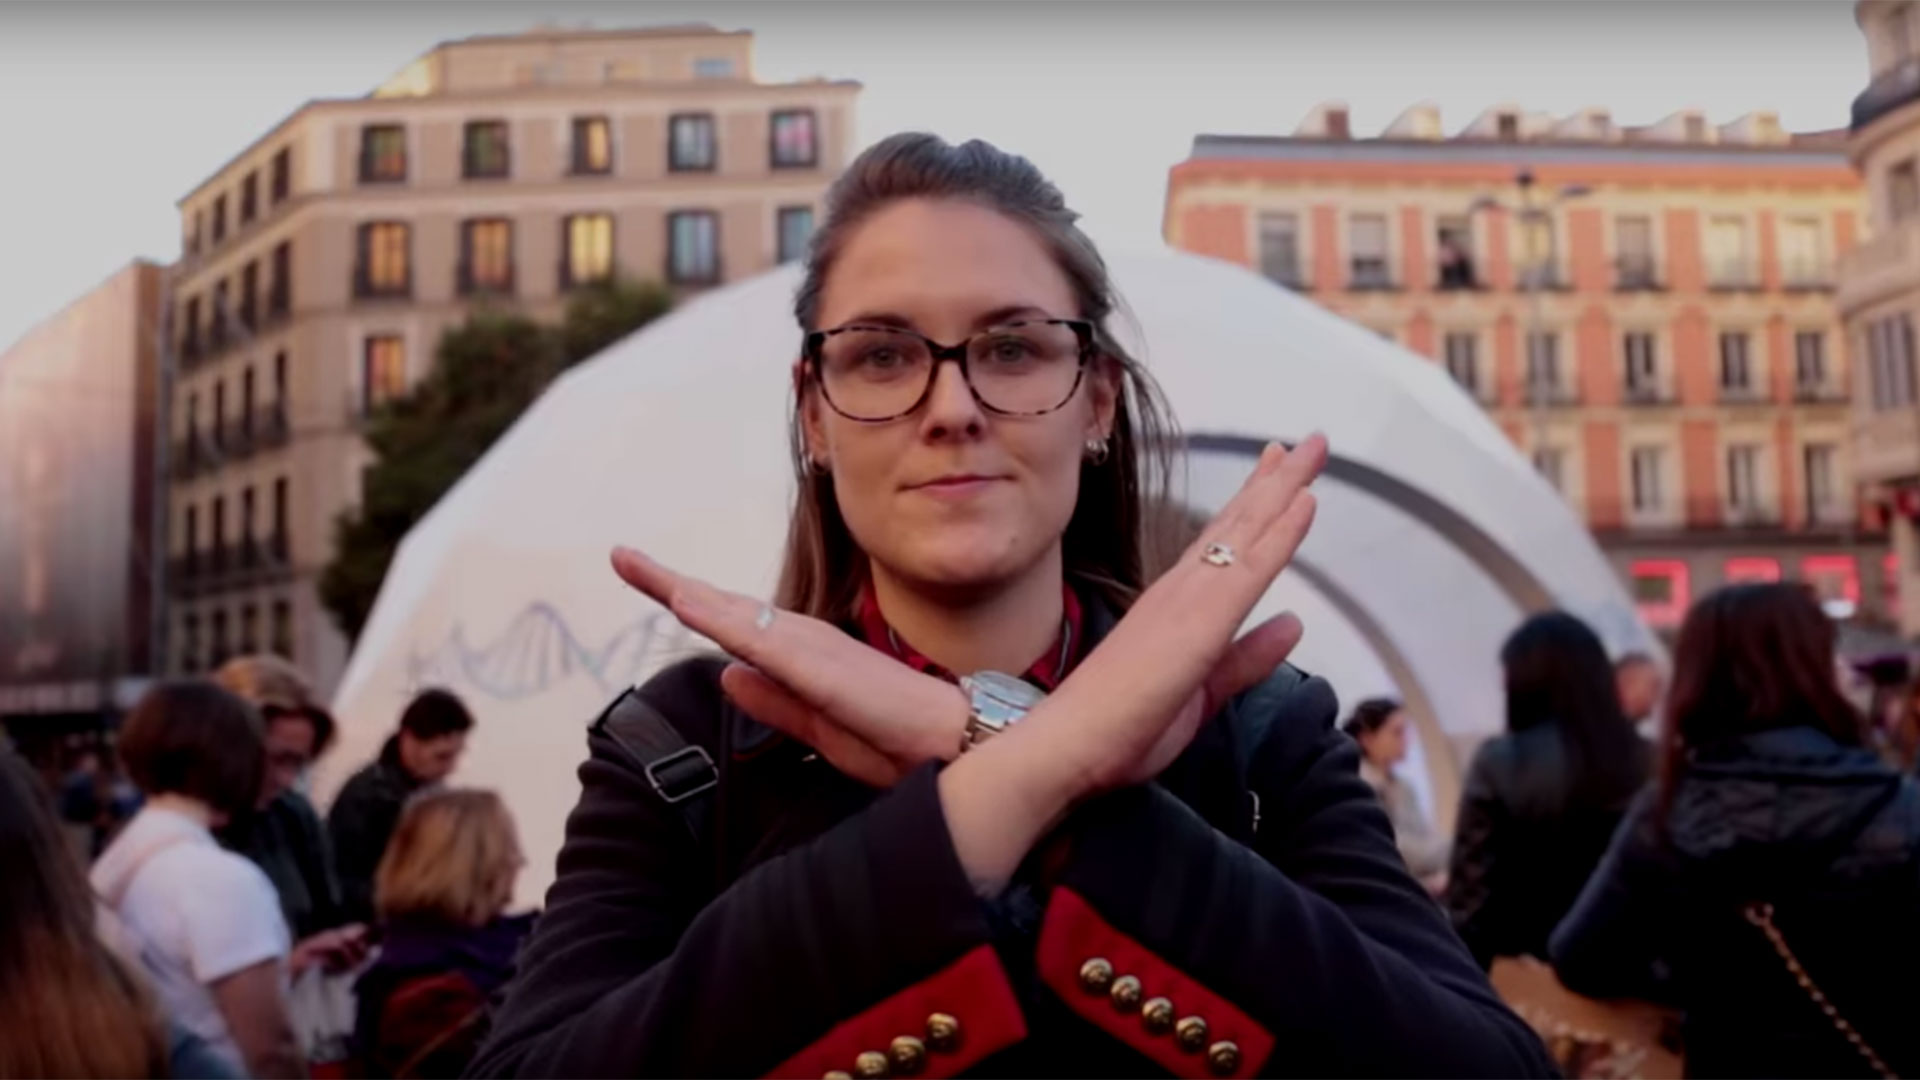 'Me niego a', la campaña viral de Intermón Oxfam que condena la violencia contra la mujer